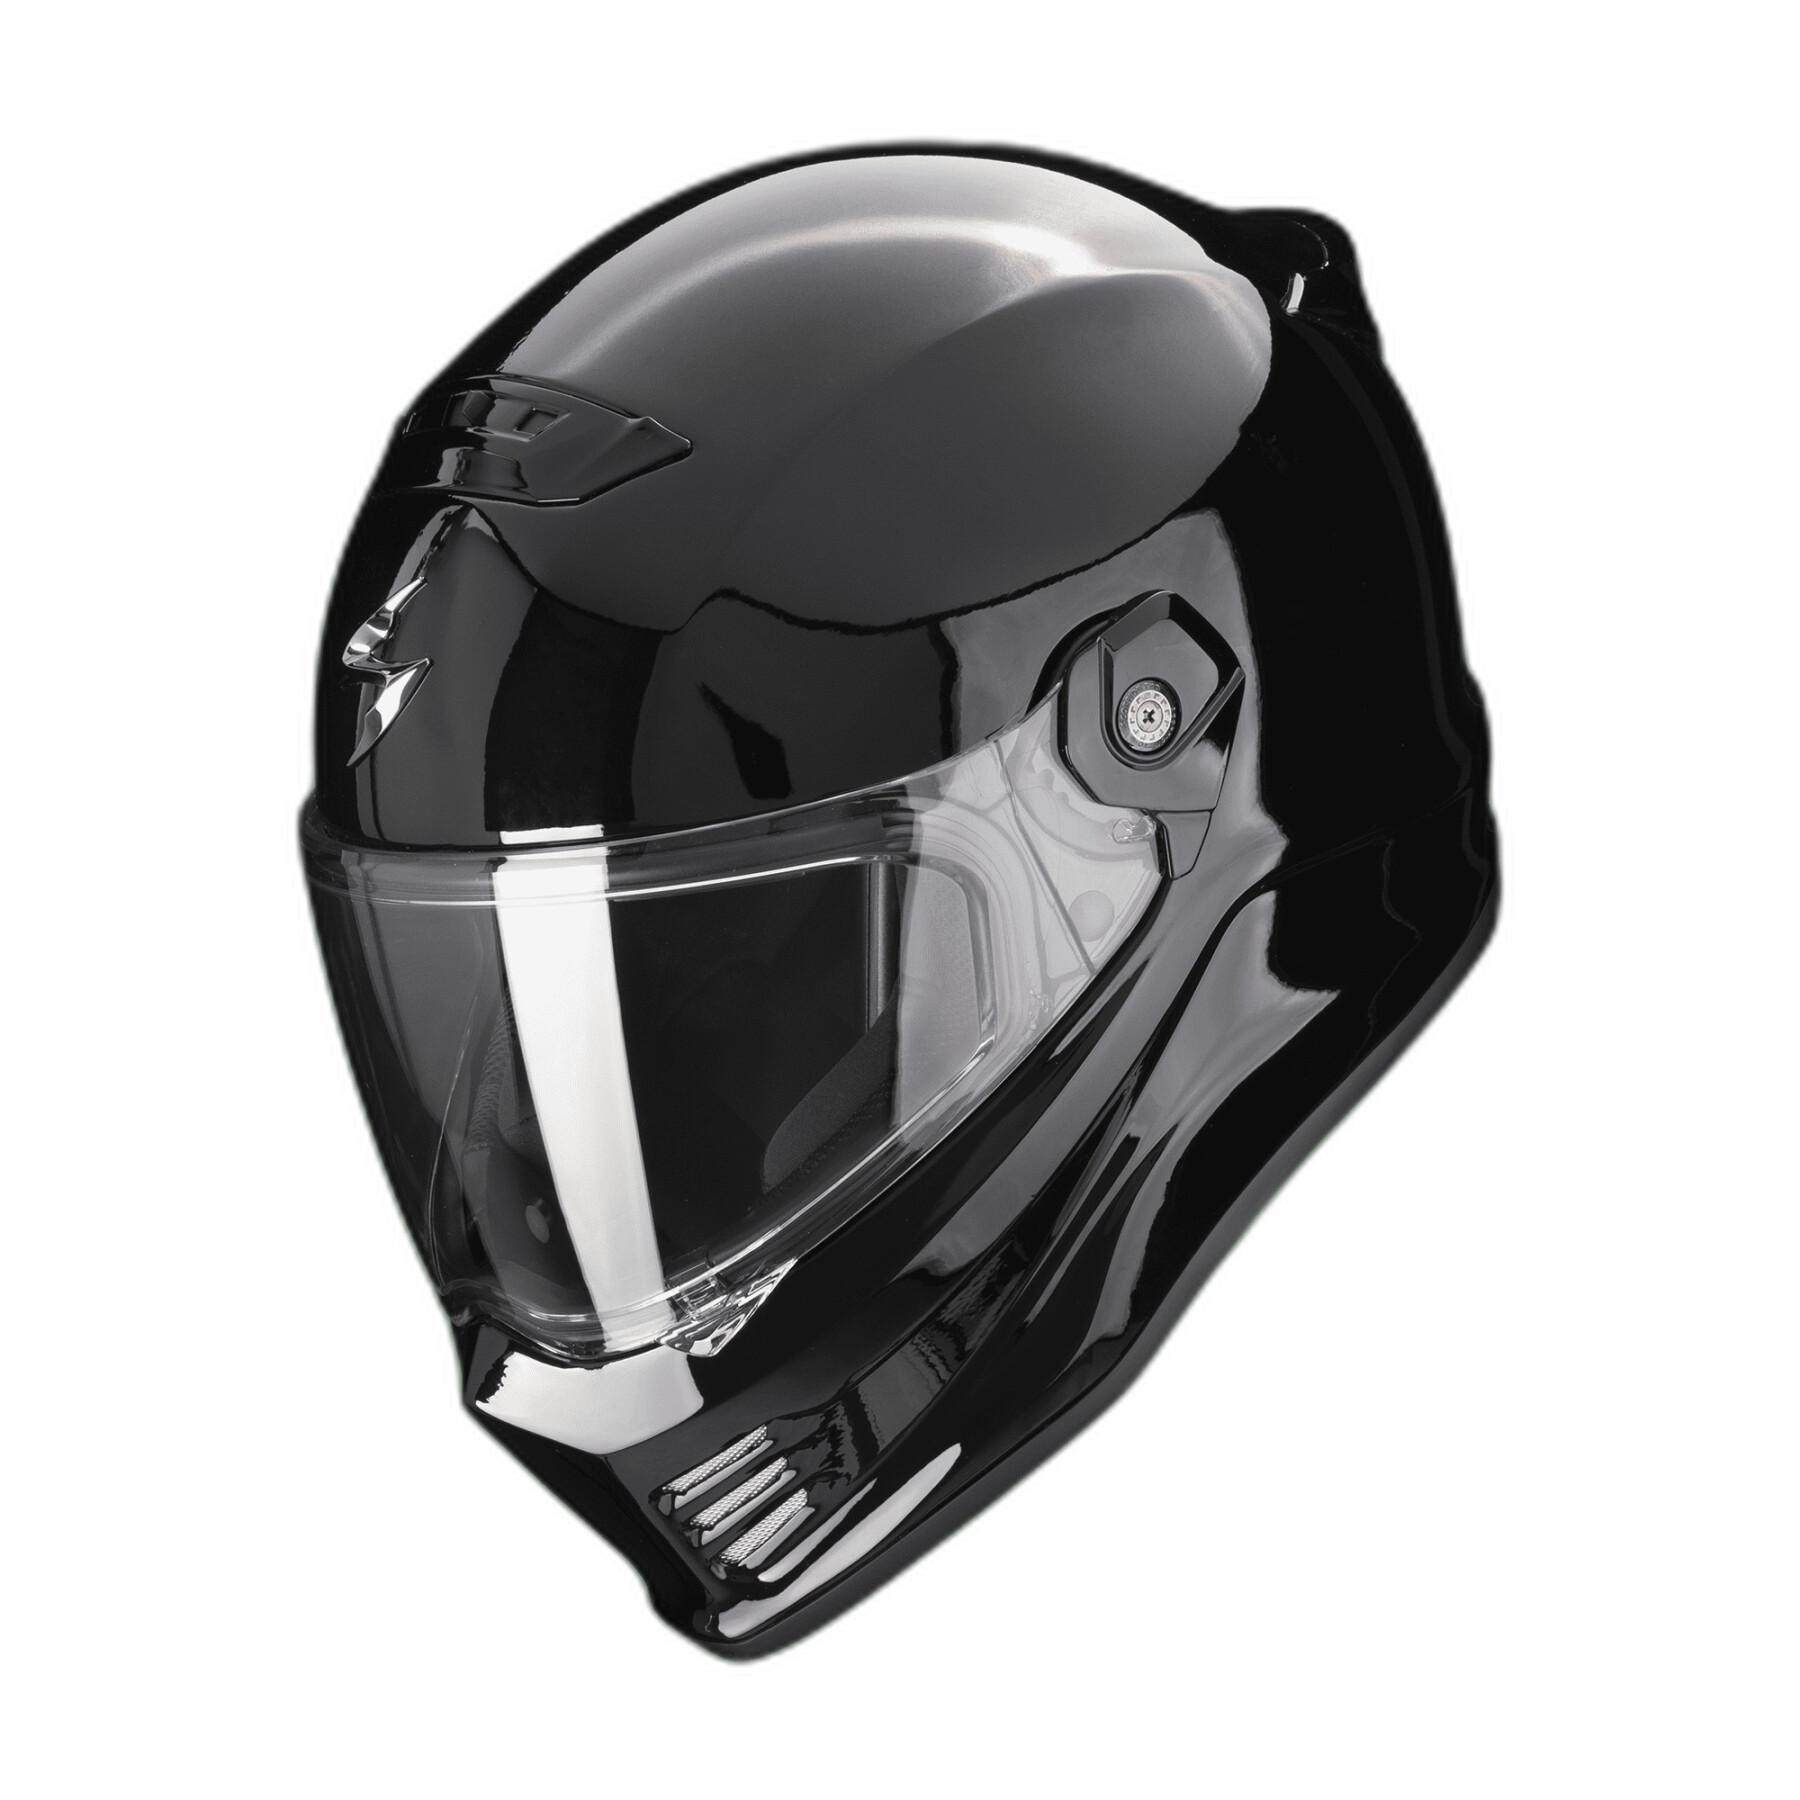 Casco integral de moto Scorpion Covert FX Solid ECE 22-06